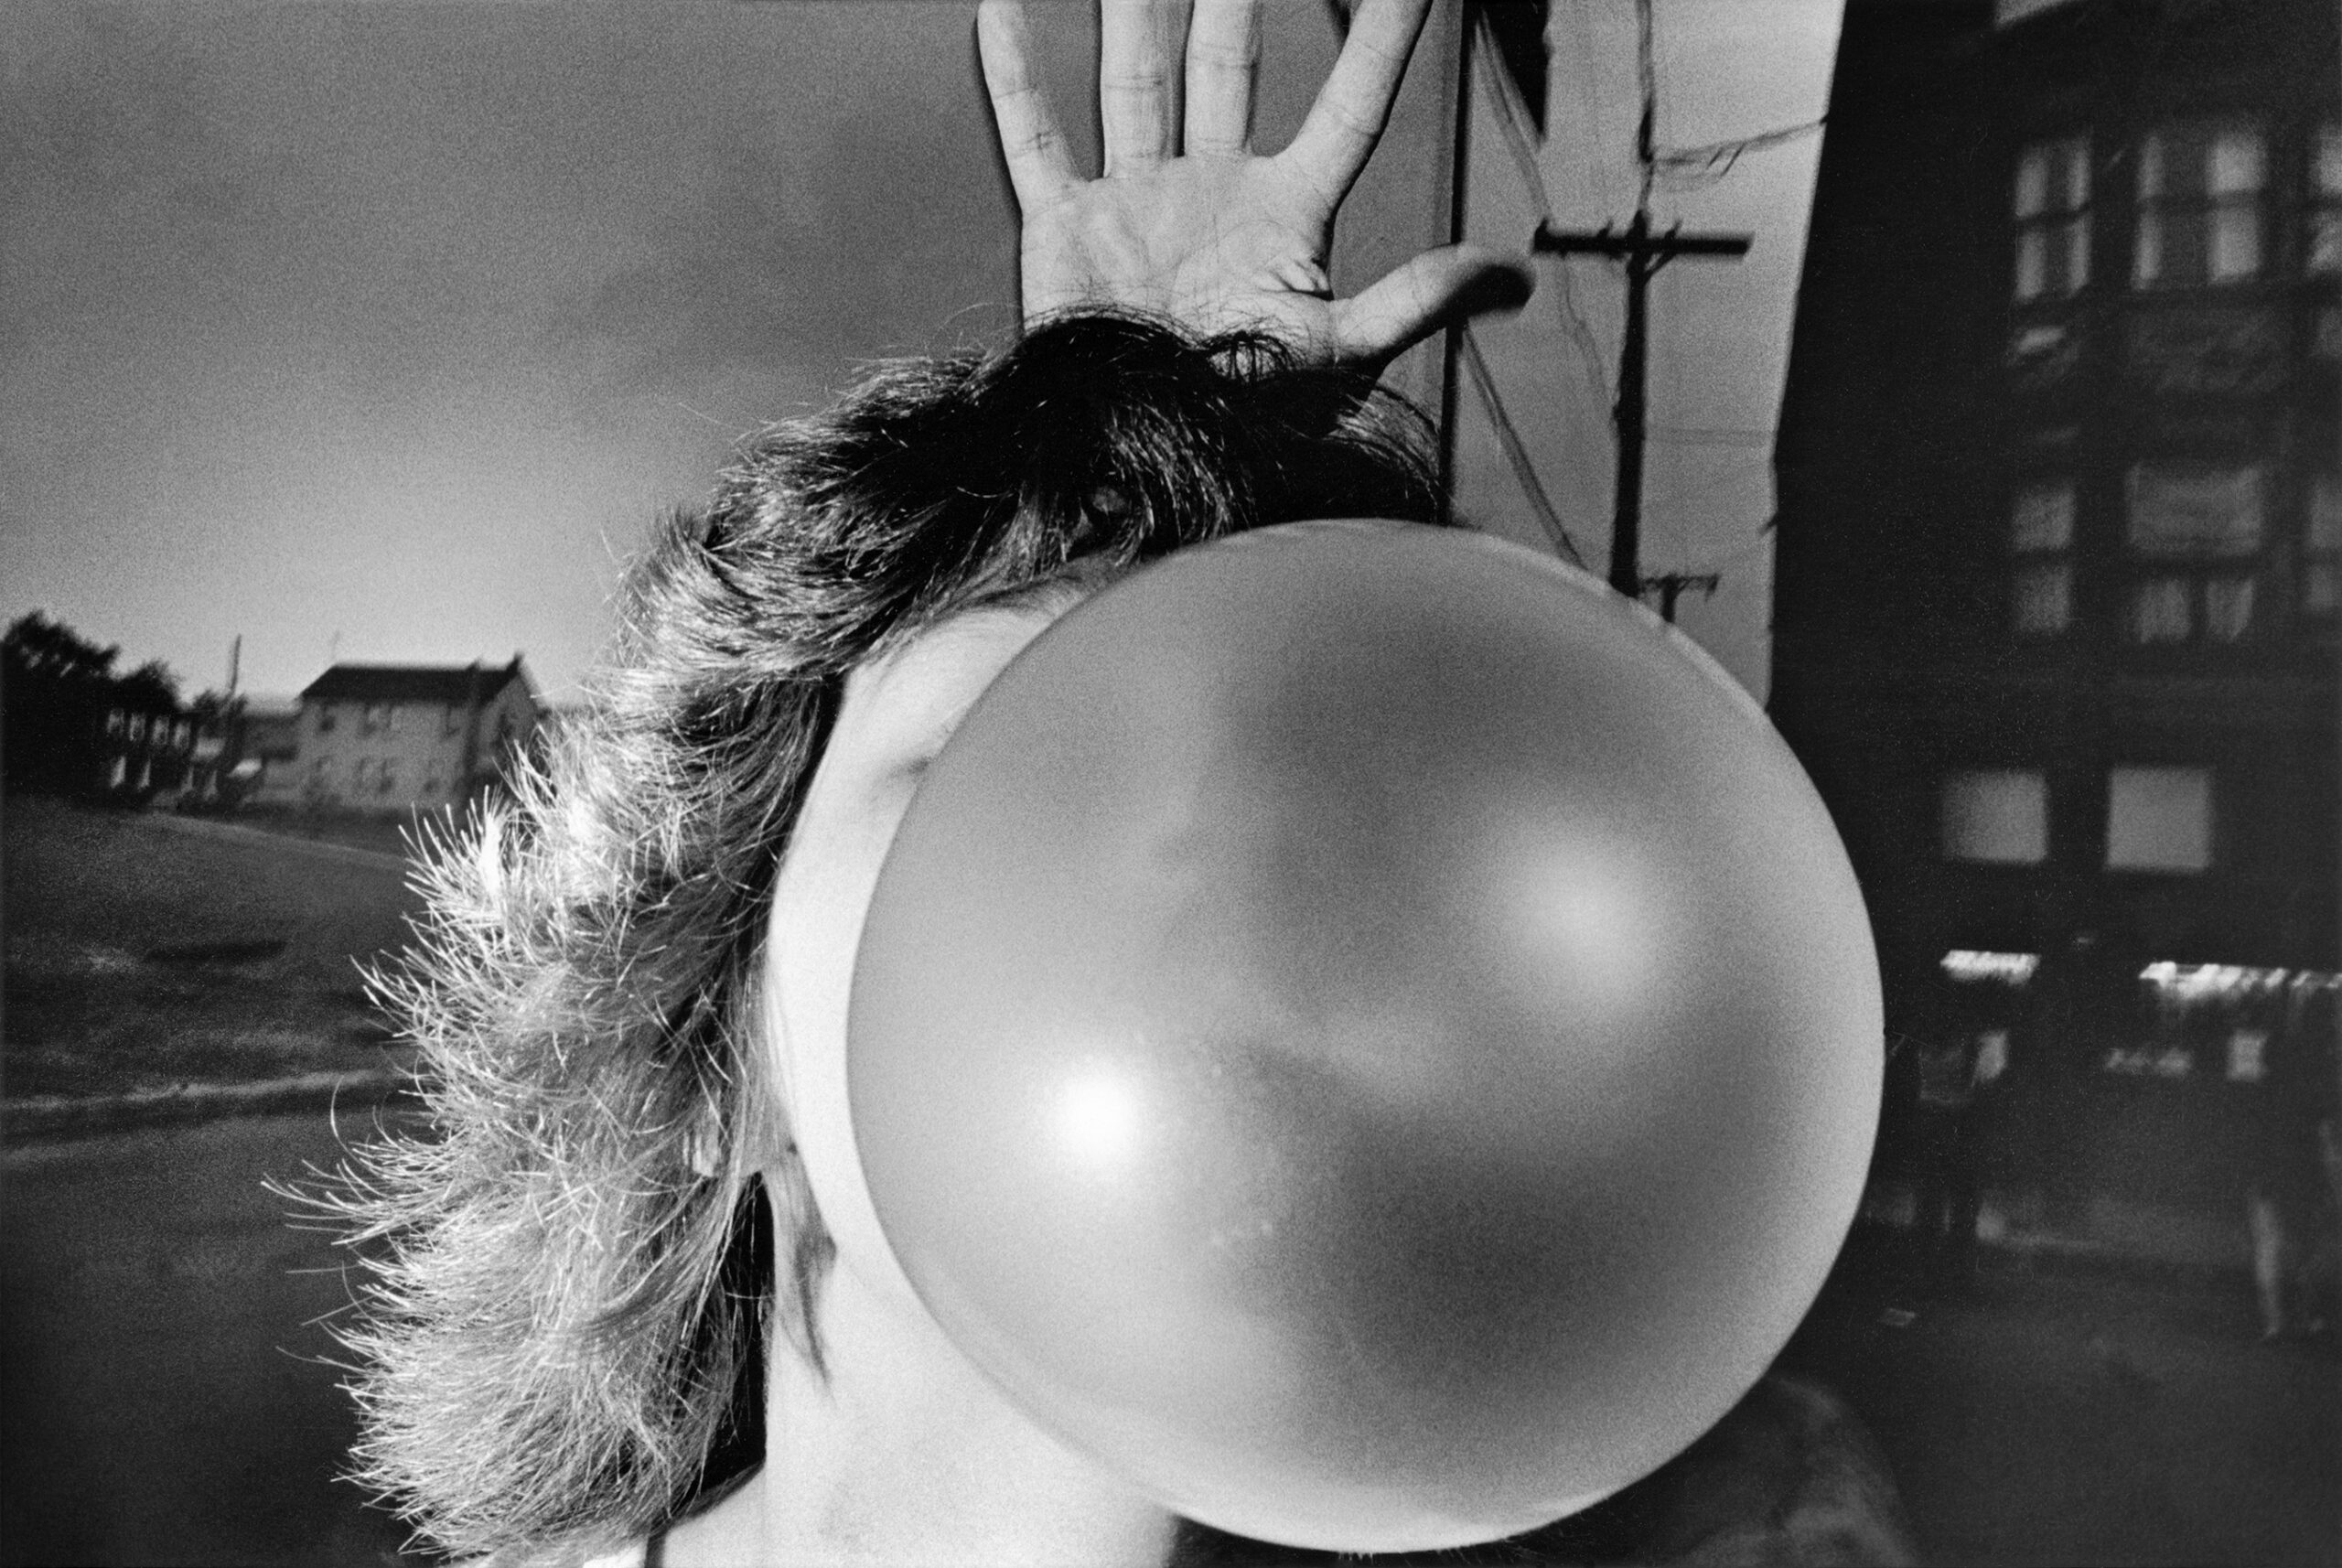 photographie de Mark Cohen (1975) Bubblegum